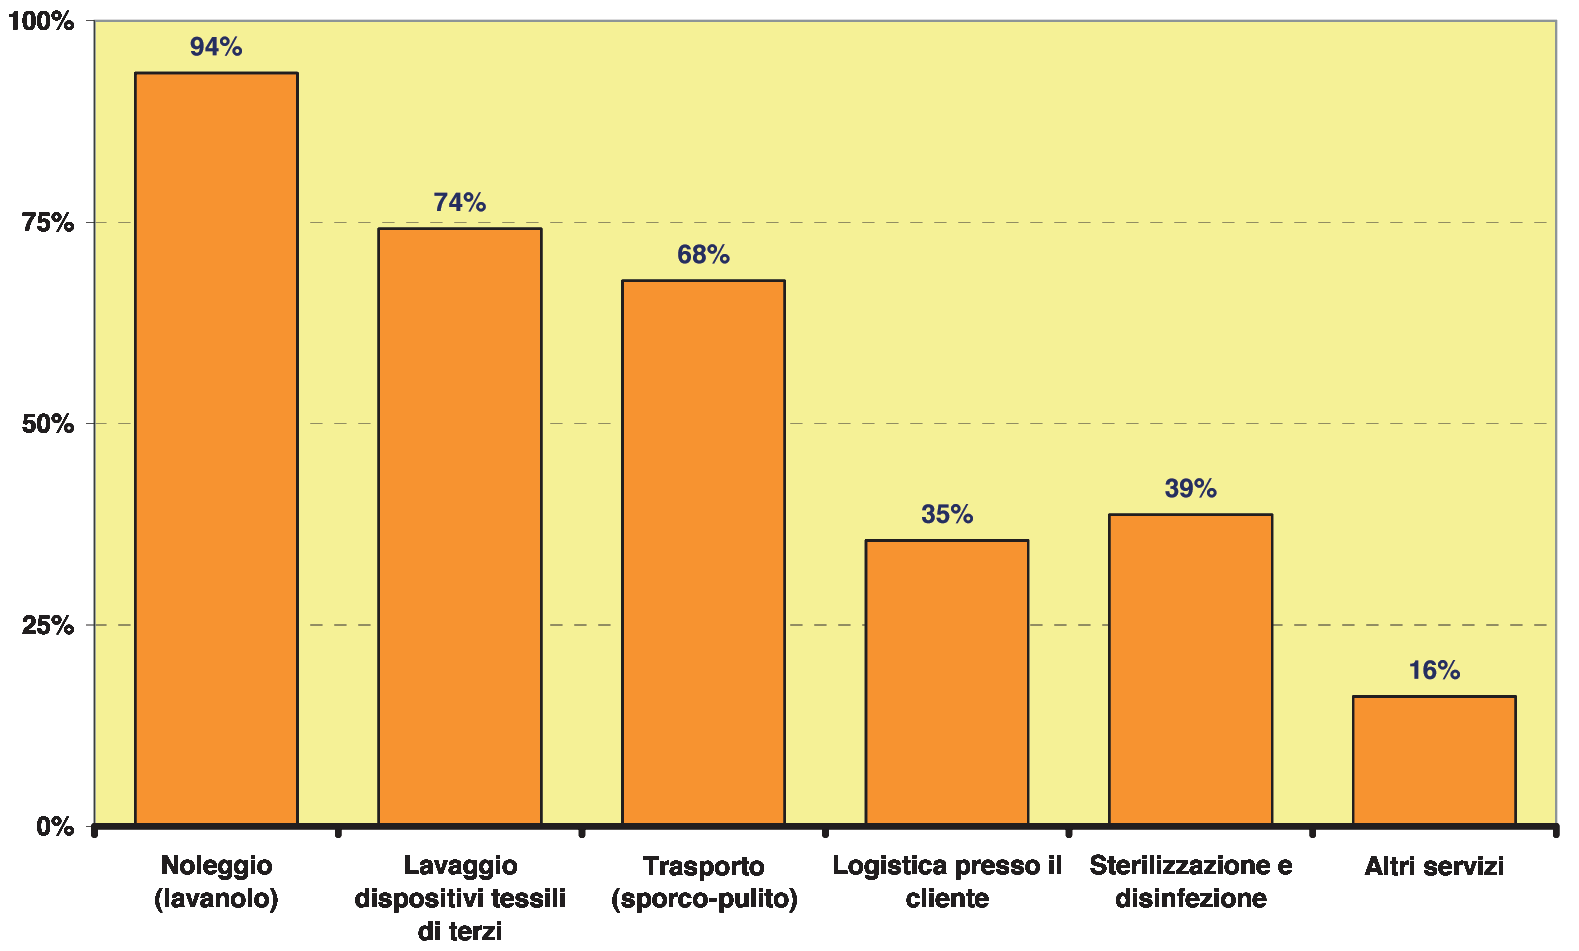 Il lavaggio dei dispositivi di terzi è realizzato da 3/4 delle imprese (74%), ma rappresenta complessivamente solo l 11% del fatturato totale: si può considerare un completamento della attività di